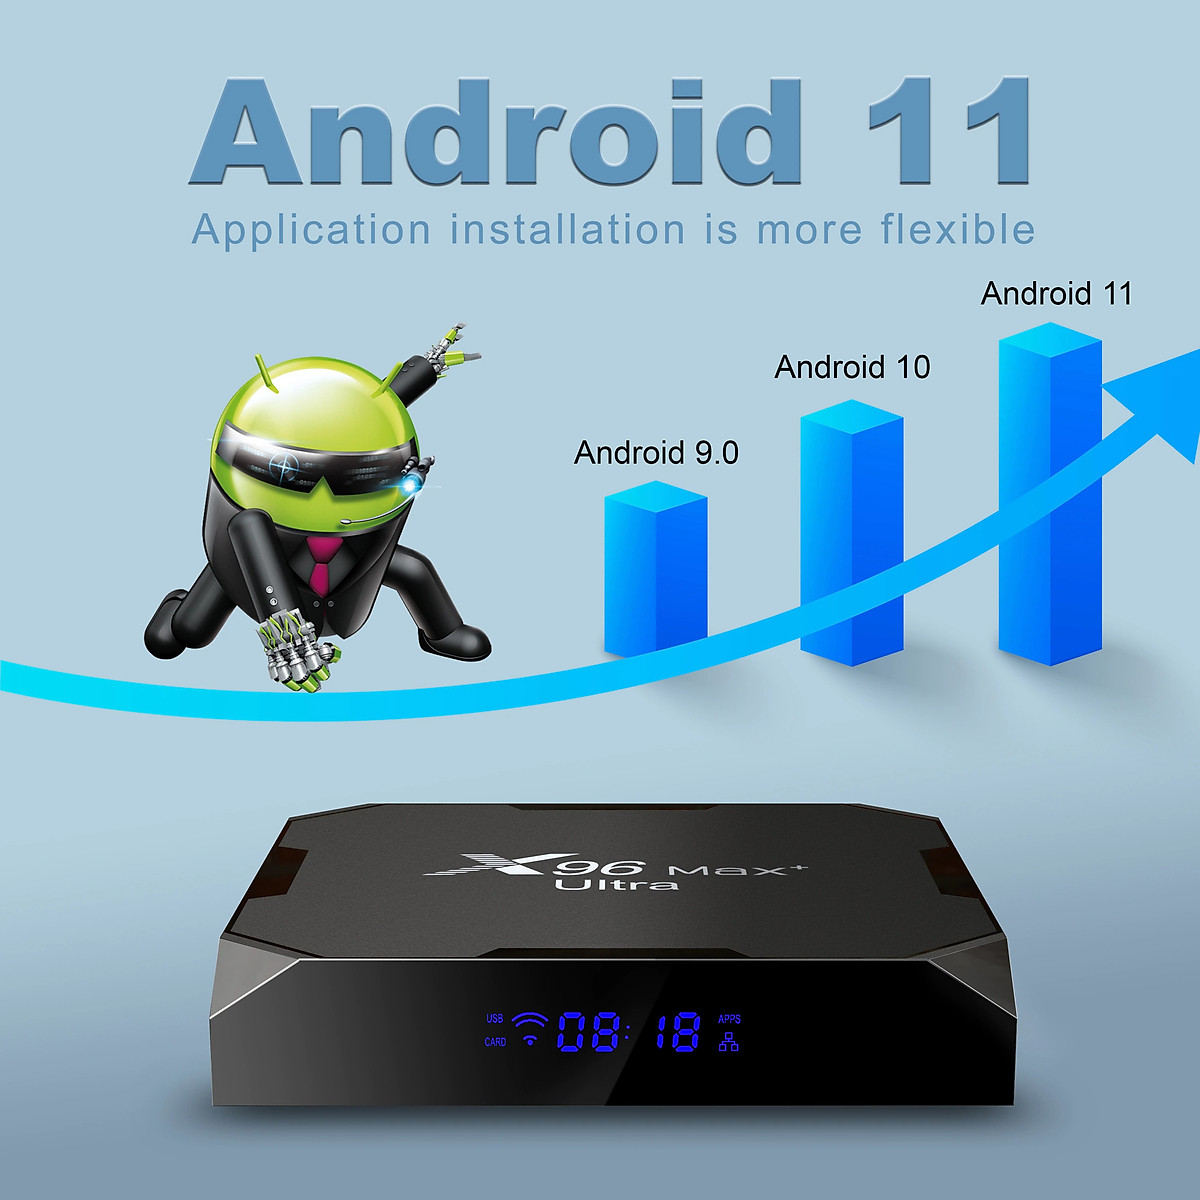 Tivi Box X96 Max plus ultra Android 11 điều khiển giọng nói tiếng việt kiêm bàn phím đèn nền Ram 4G Có Bluetooth S905X4 Wifi Kép Cài Sẵn Ứng Dụng Xem Phim Hd Và Truyền Hình Cáp miễn phí vĩnh viễn - Hàng Nhập Khẩu